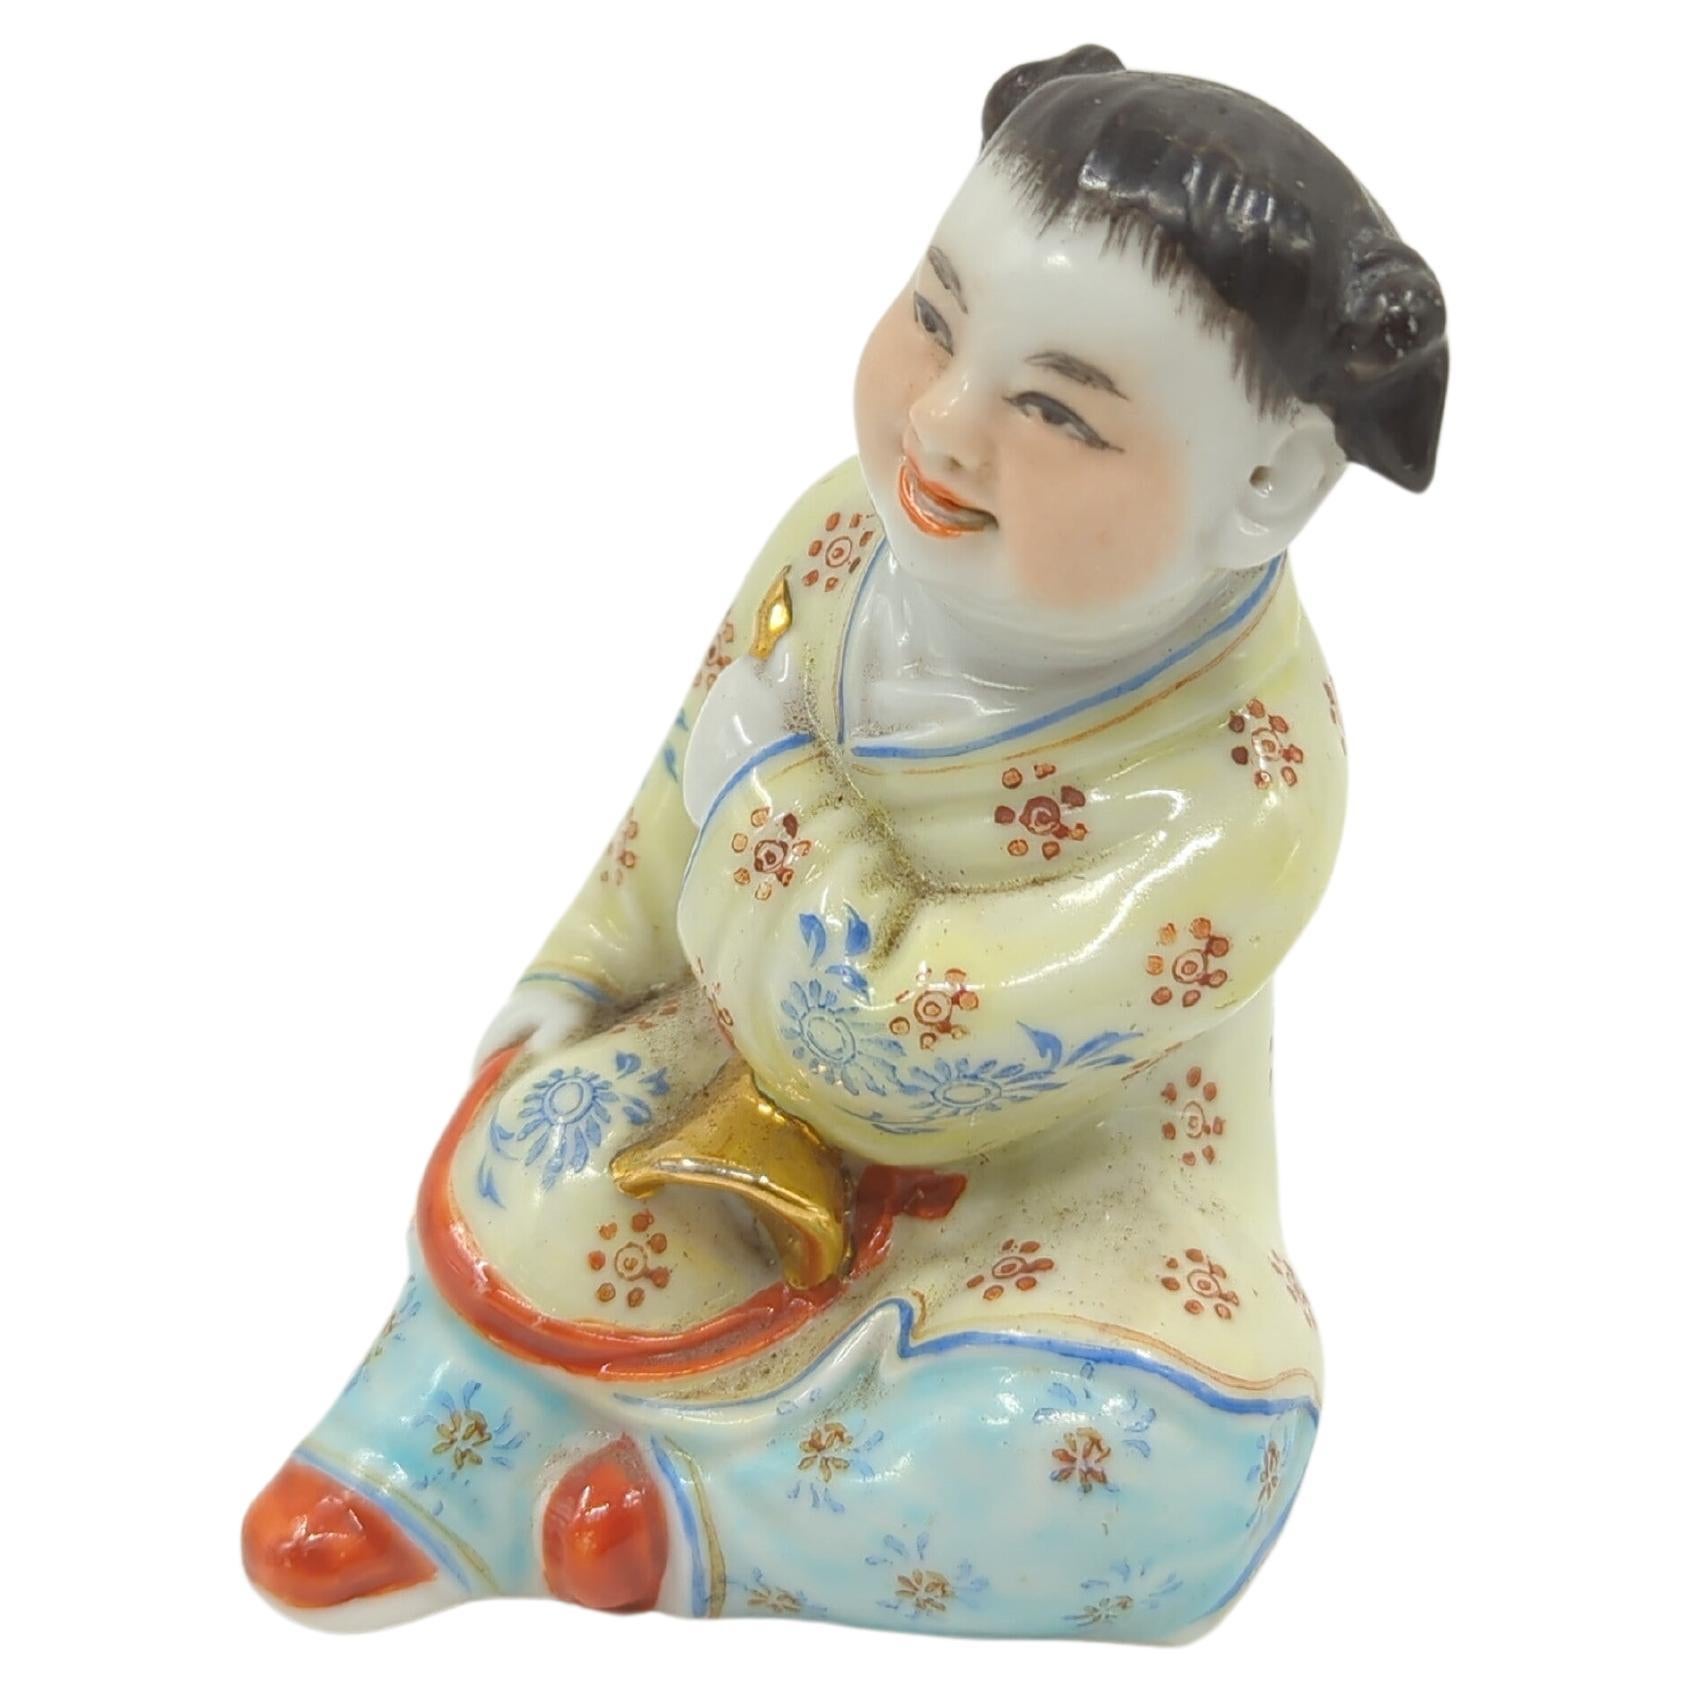 Nahezu antike chinesische Famille-Rose-Porzellanfigur eines verspielten, lächelnden Kindes in sitzender Haltung, in den Händen einen goldenen Gegenstand, wahrscheinlich ein Instrument, auf der Unterseite eingeprägte Markierungen: 